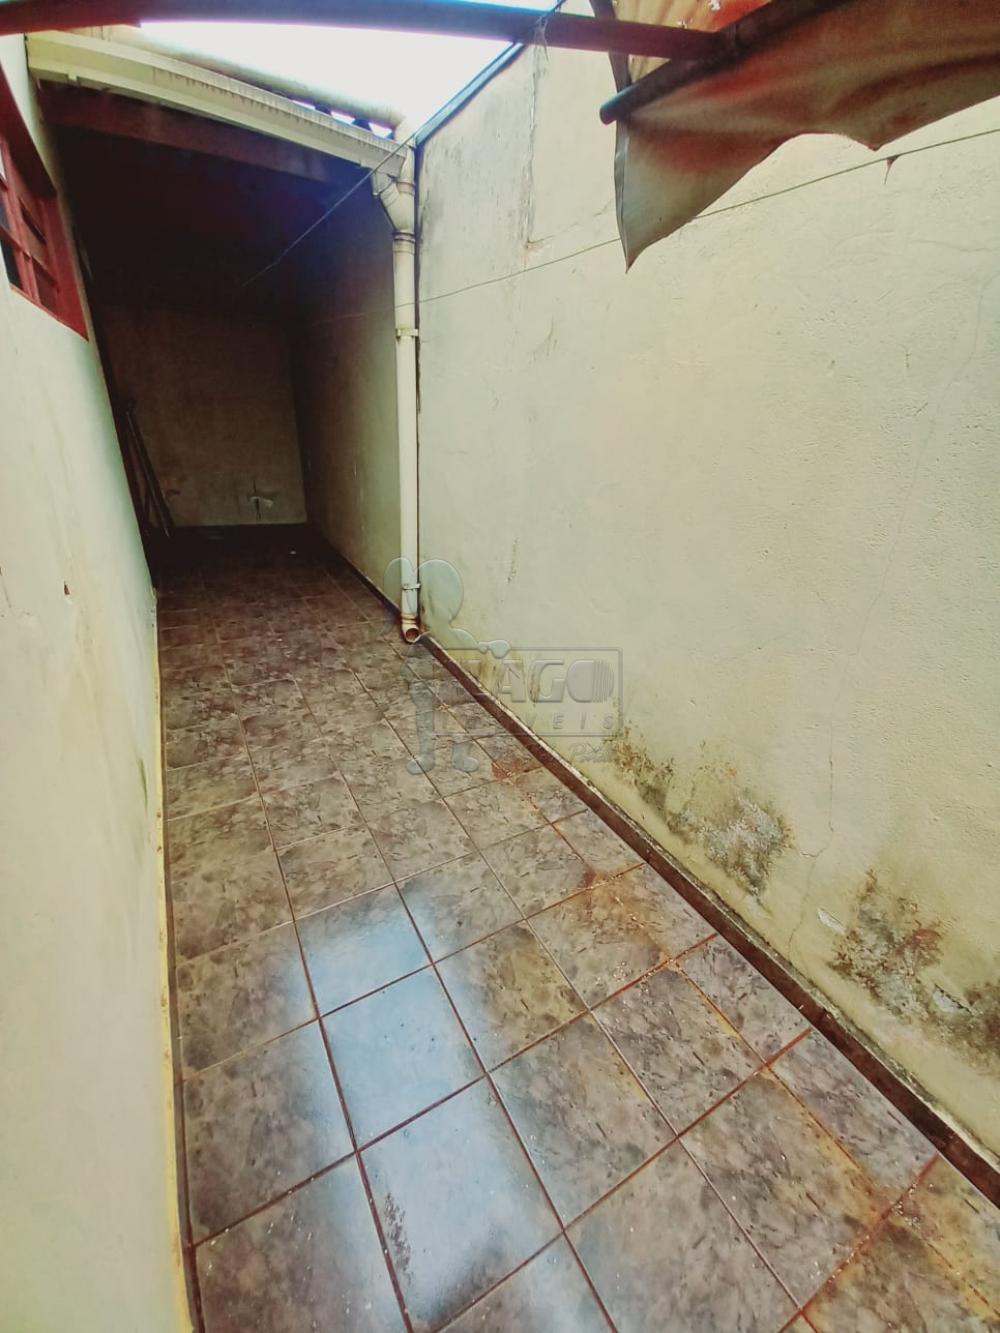 Alugar Casa / Padrão em Ribeirão Preto R$ 800,00 - Foto 10